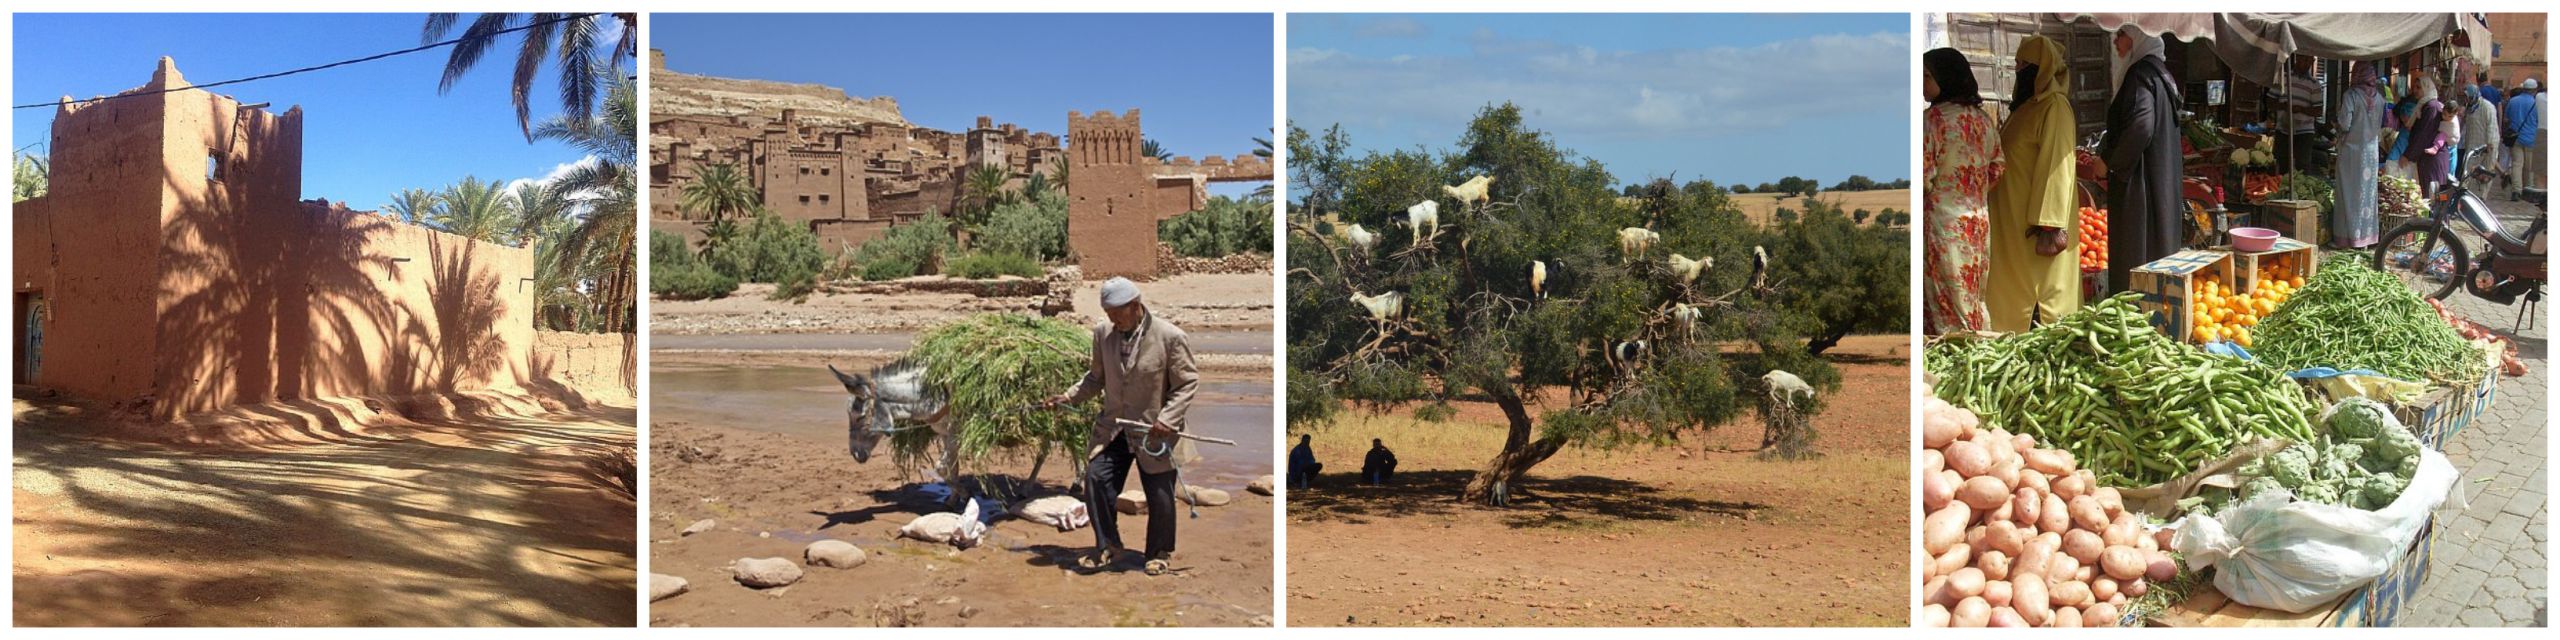 4-daagse rondreis Agadir, colllage kasbah, Ait Ben Haddou, geiten in boom, souk